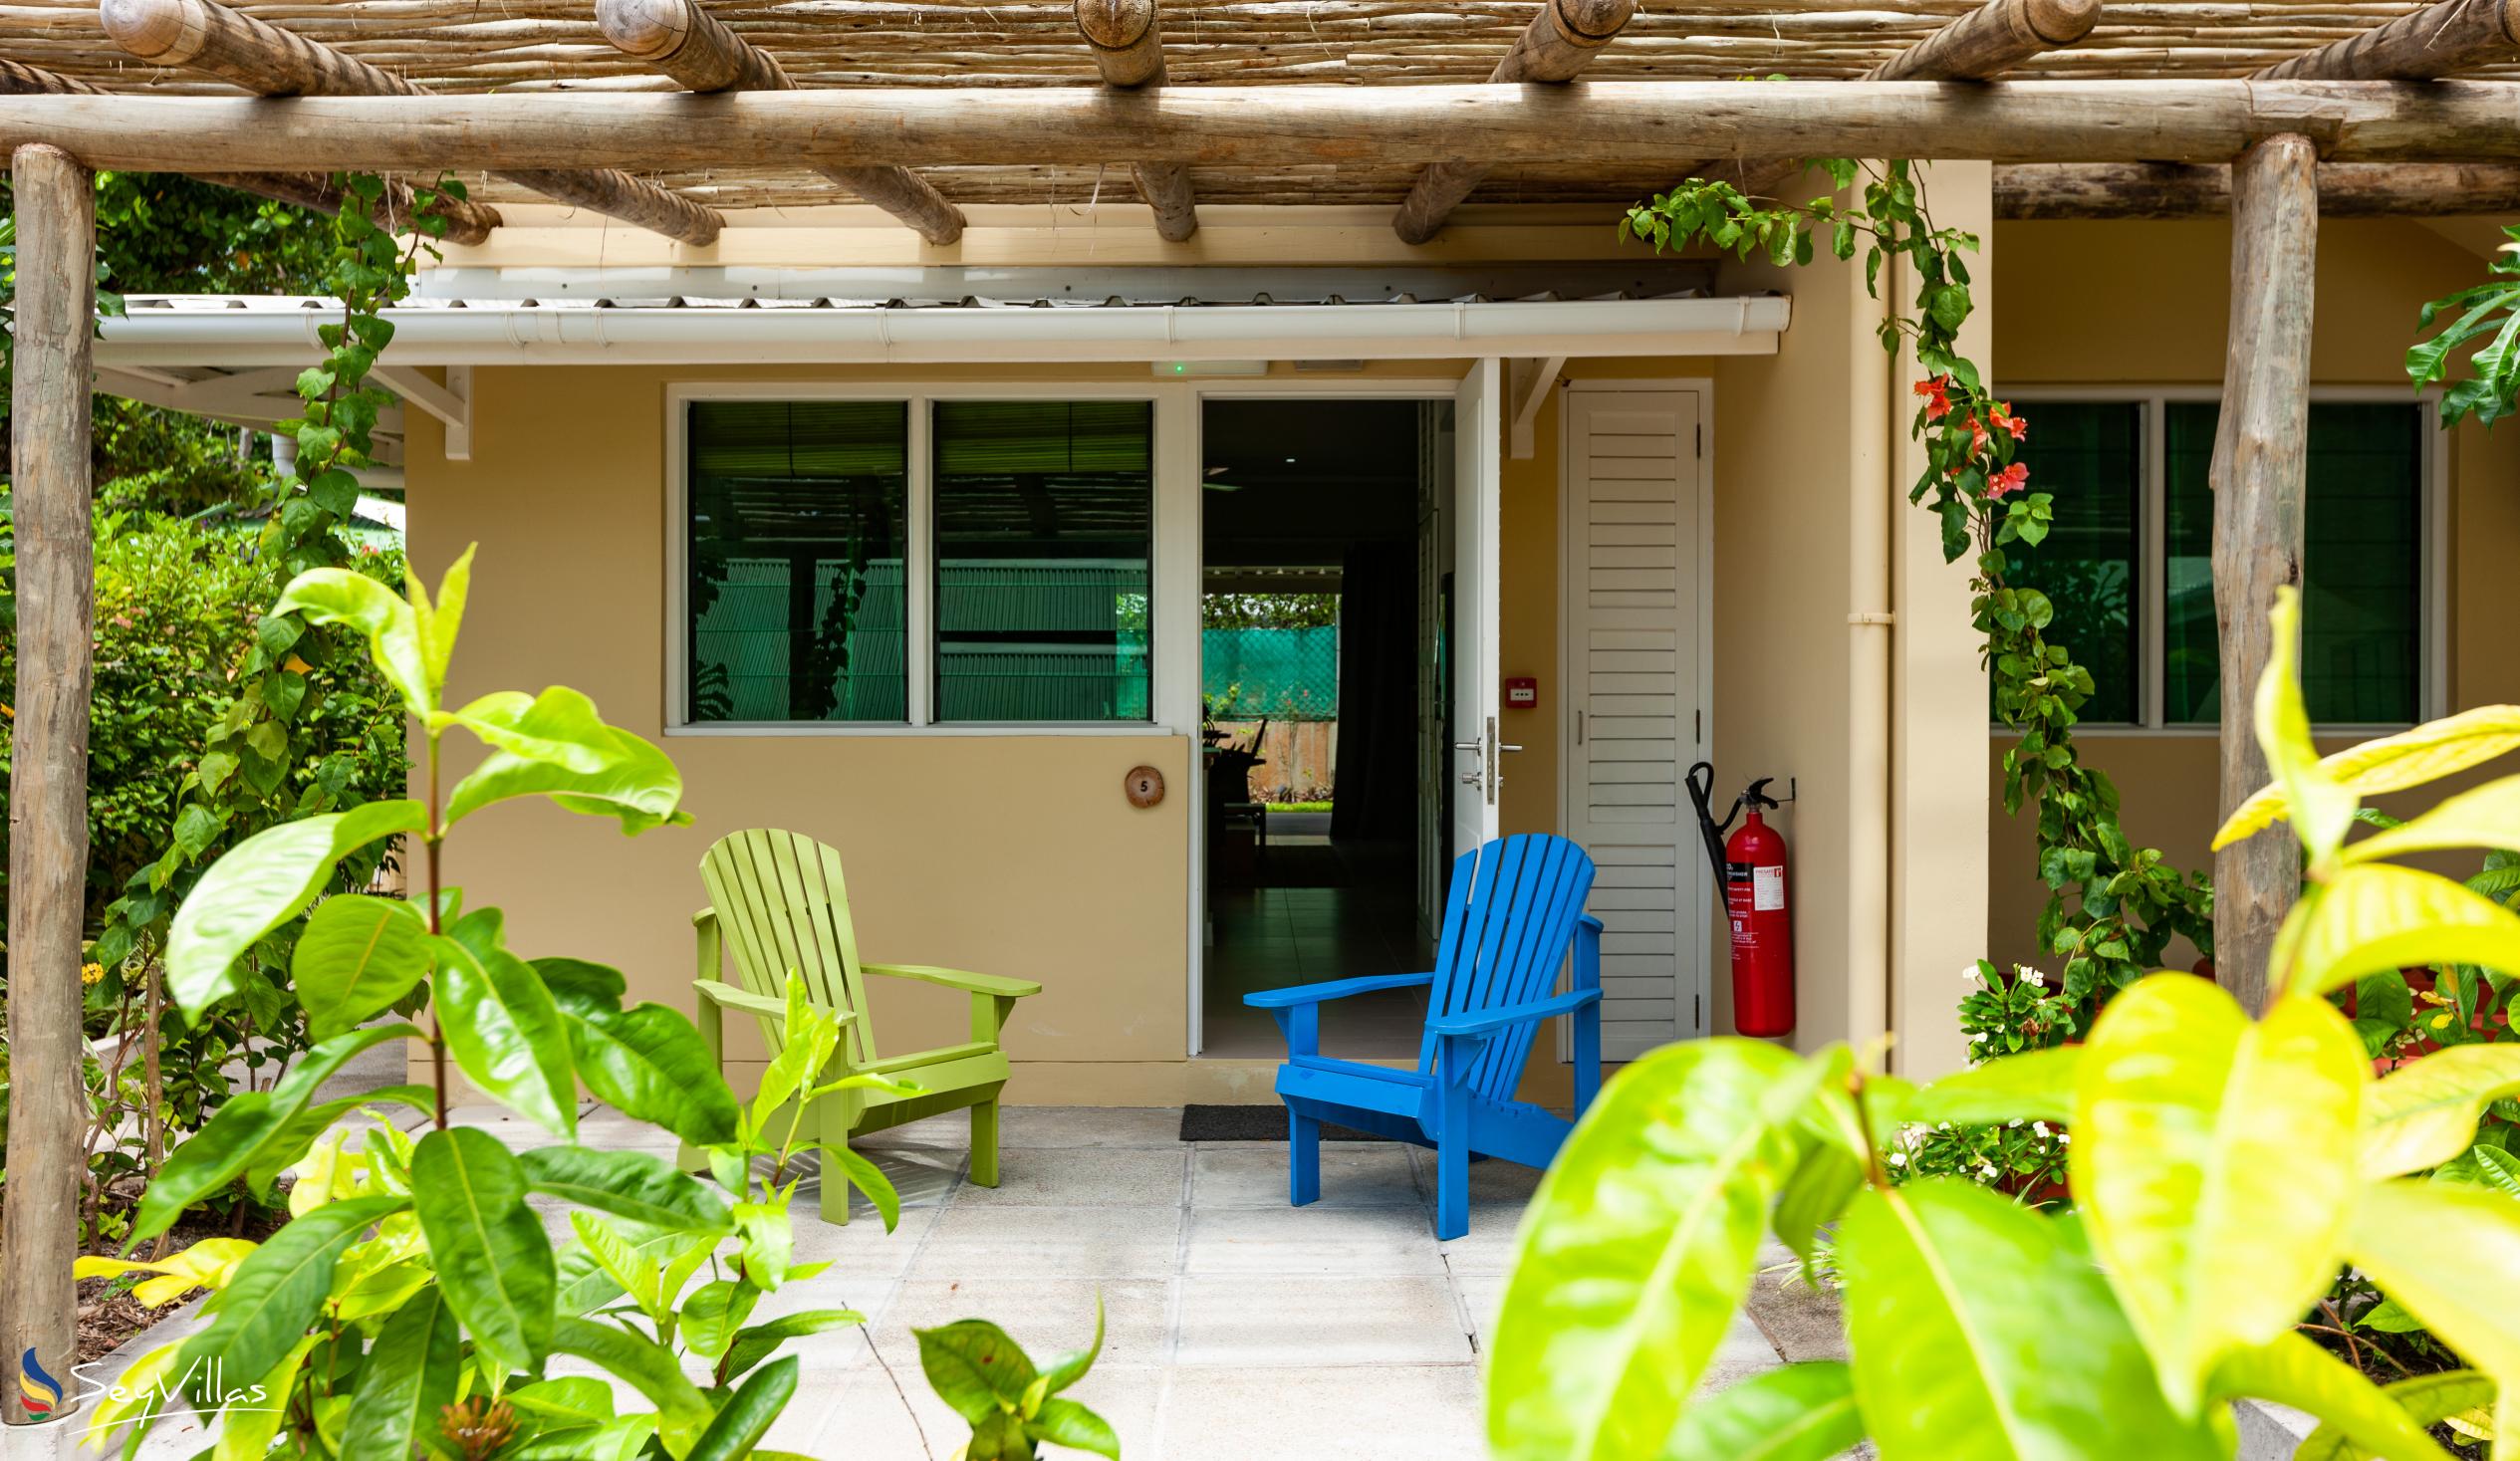 Foto 29: Residence Praslinoise - Familienappartement mit 2 Schlafzimmern (EG) - Praslin (Seychellen)